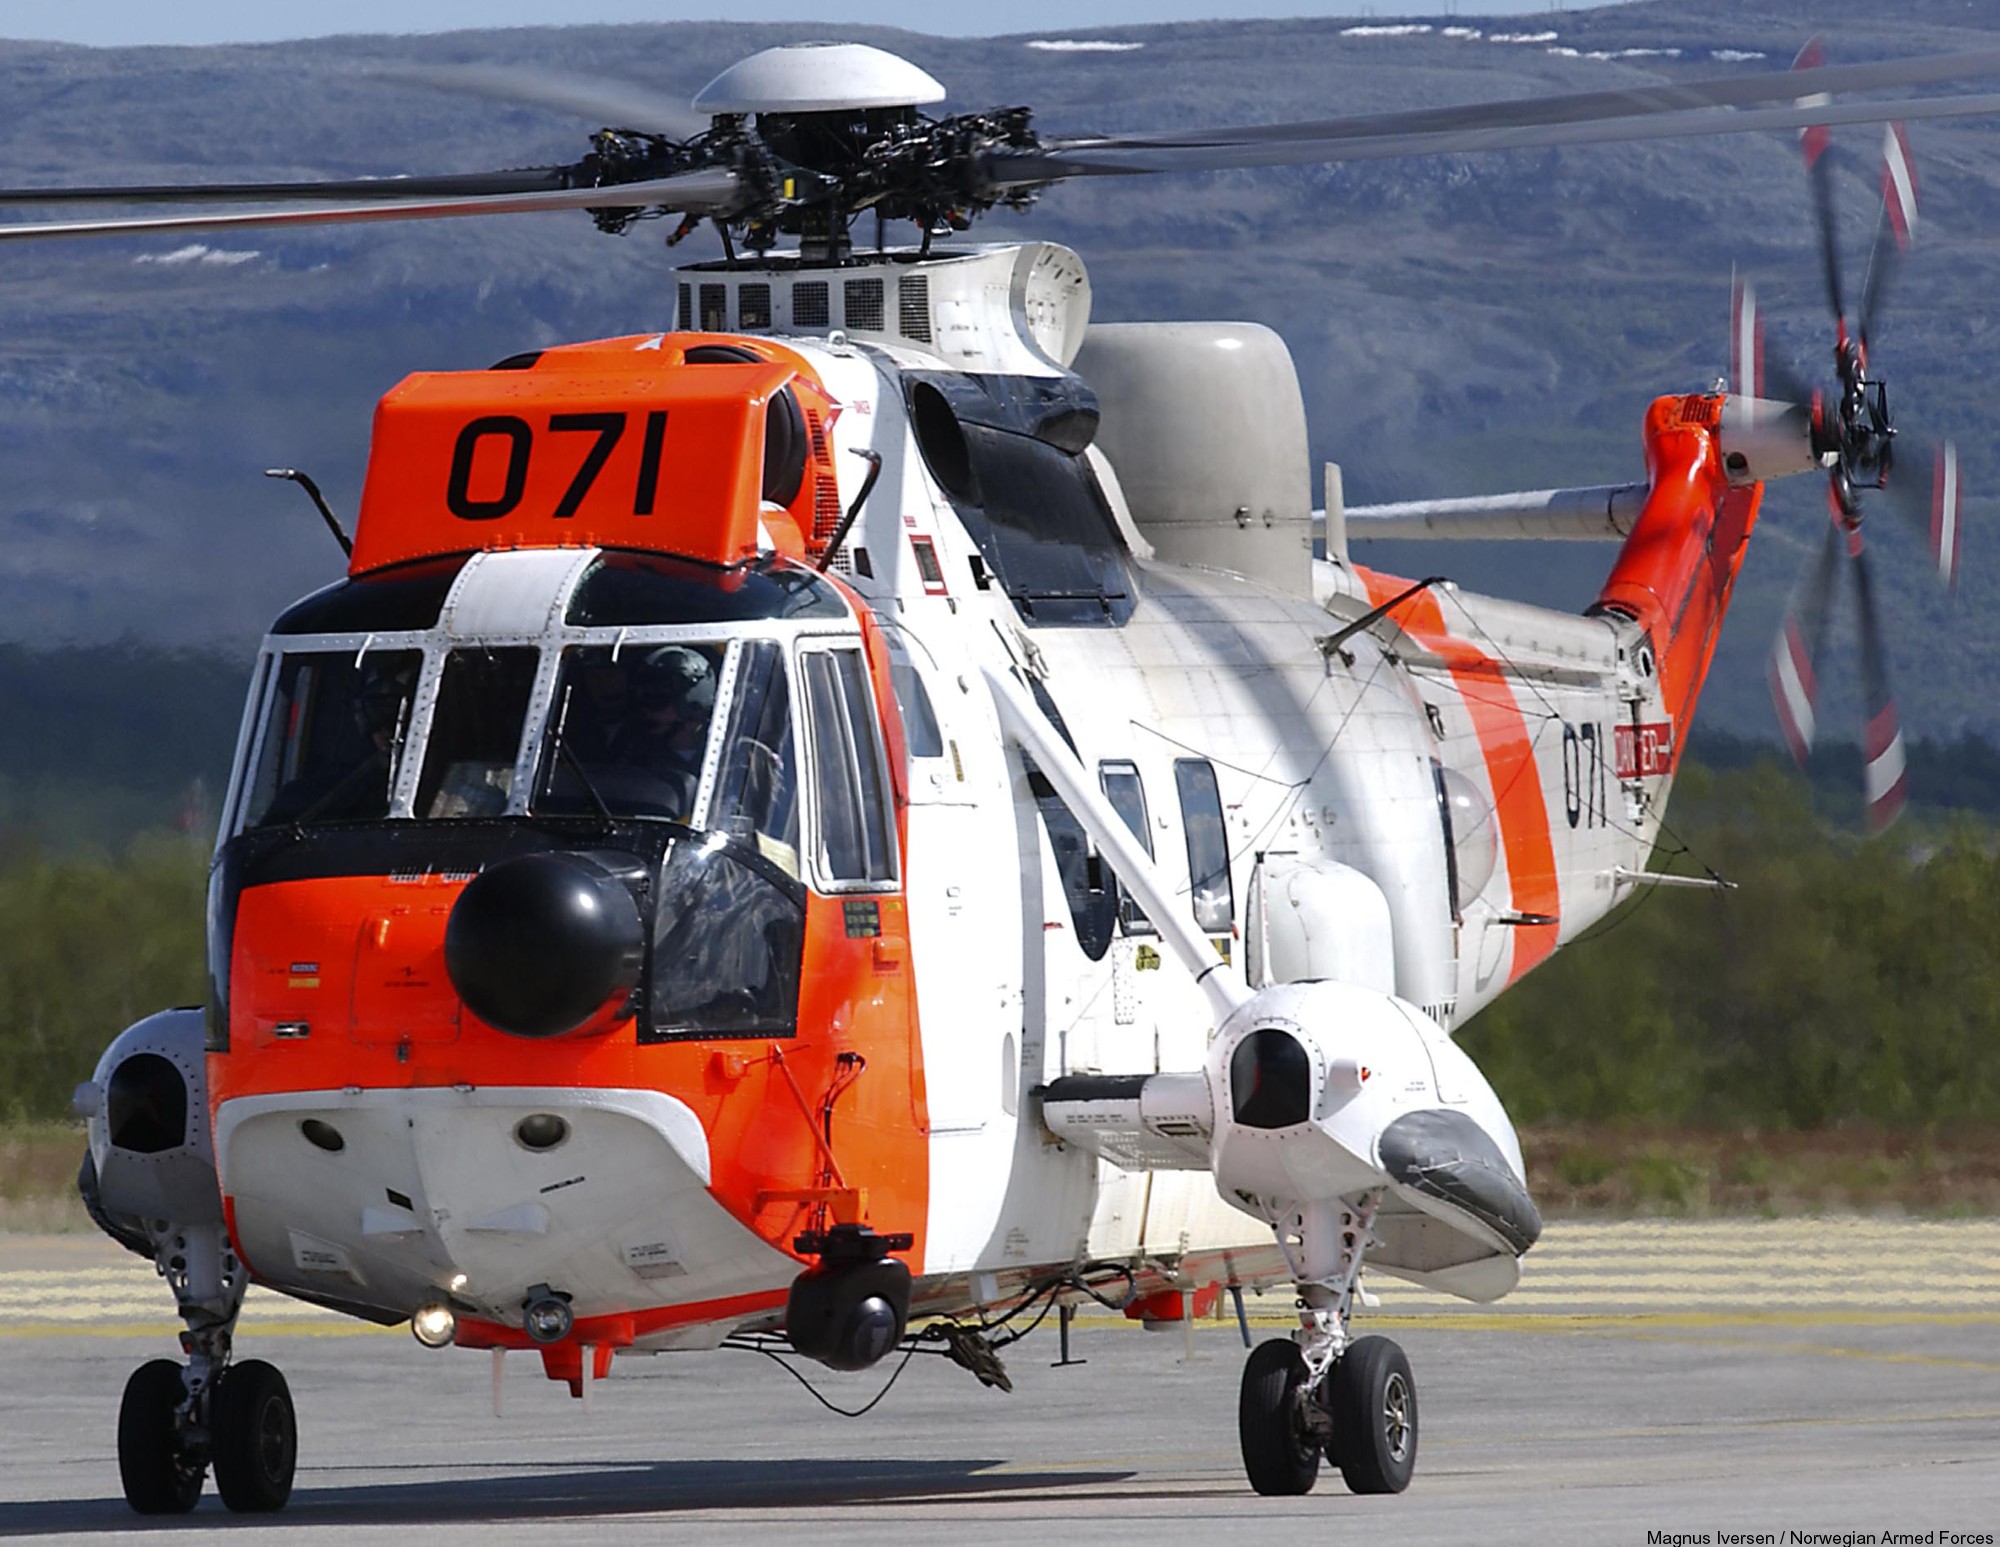 westland ws-61 sea king royal norwegian air force sar rescue 330 squadron skvadron luftforsvaret 071 03